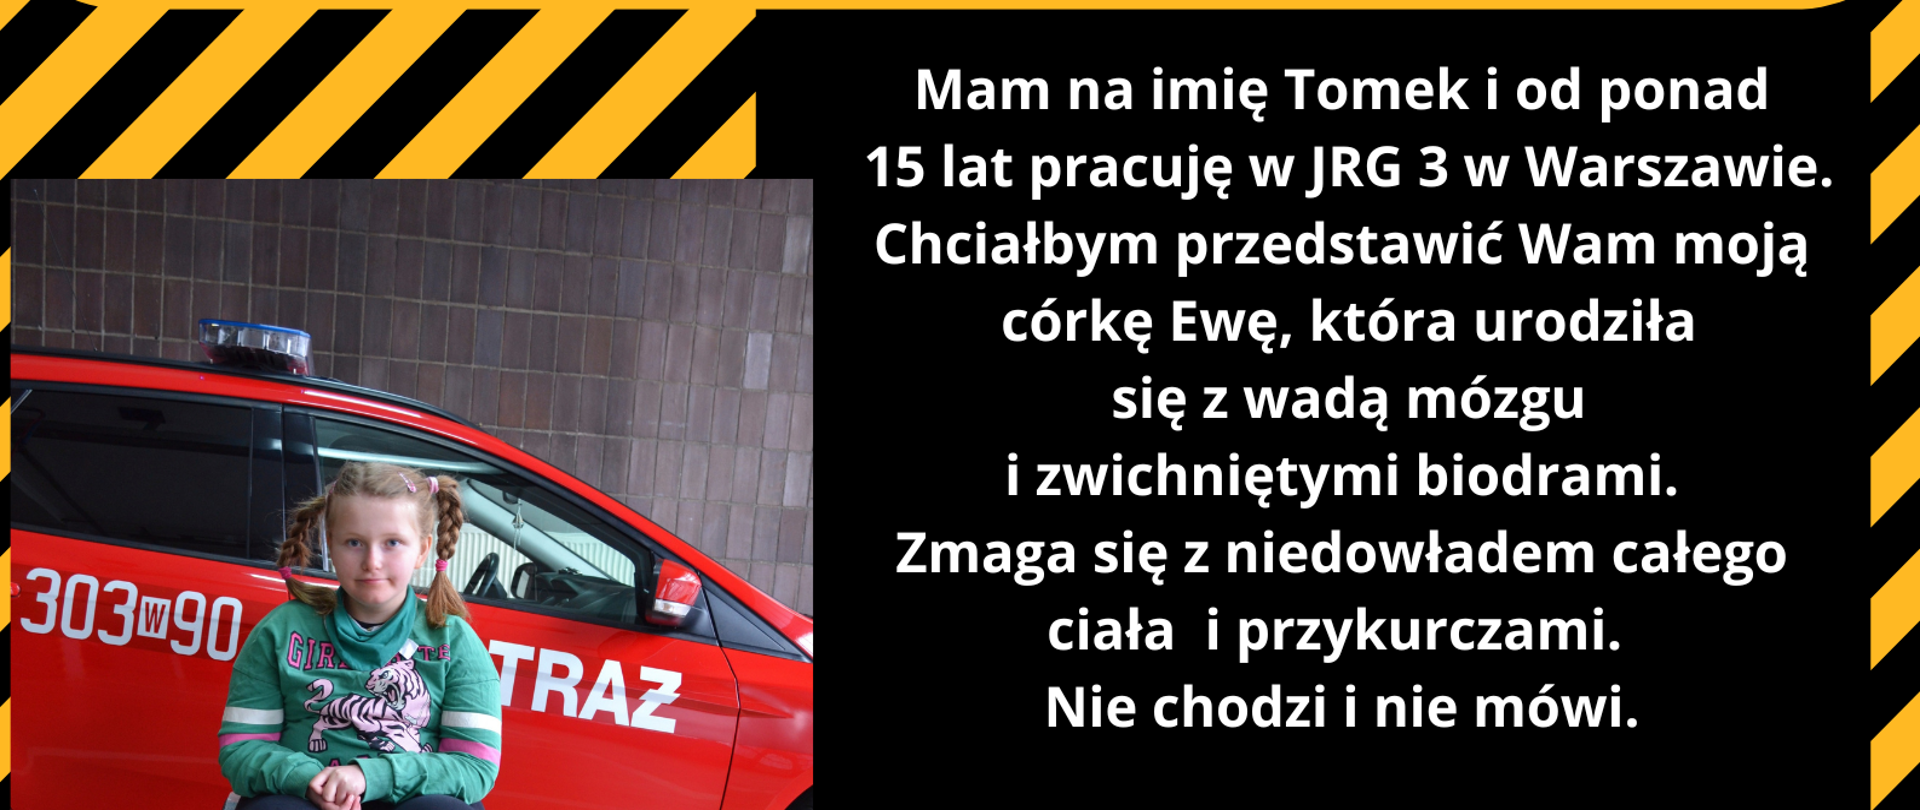 Przekaż 1,5% podatku dla córki strażaka z JRG nr 3 w Warszawie